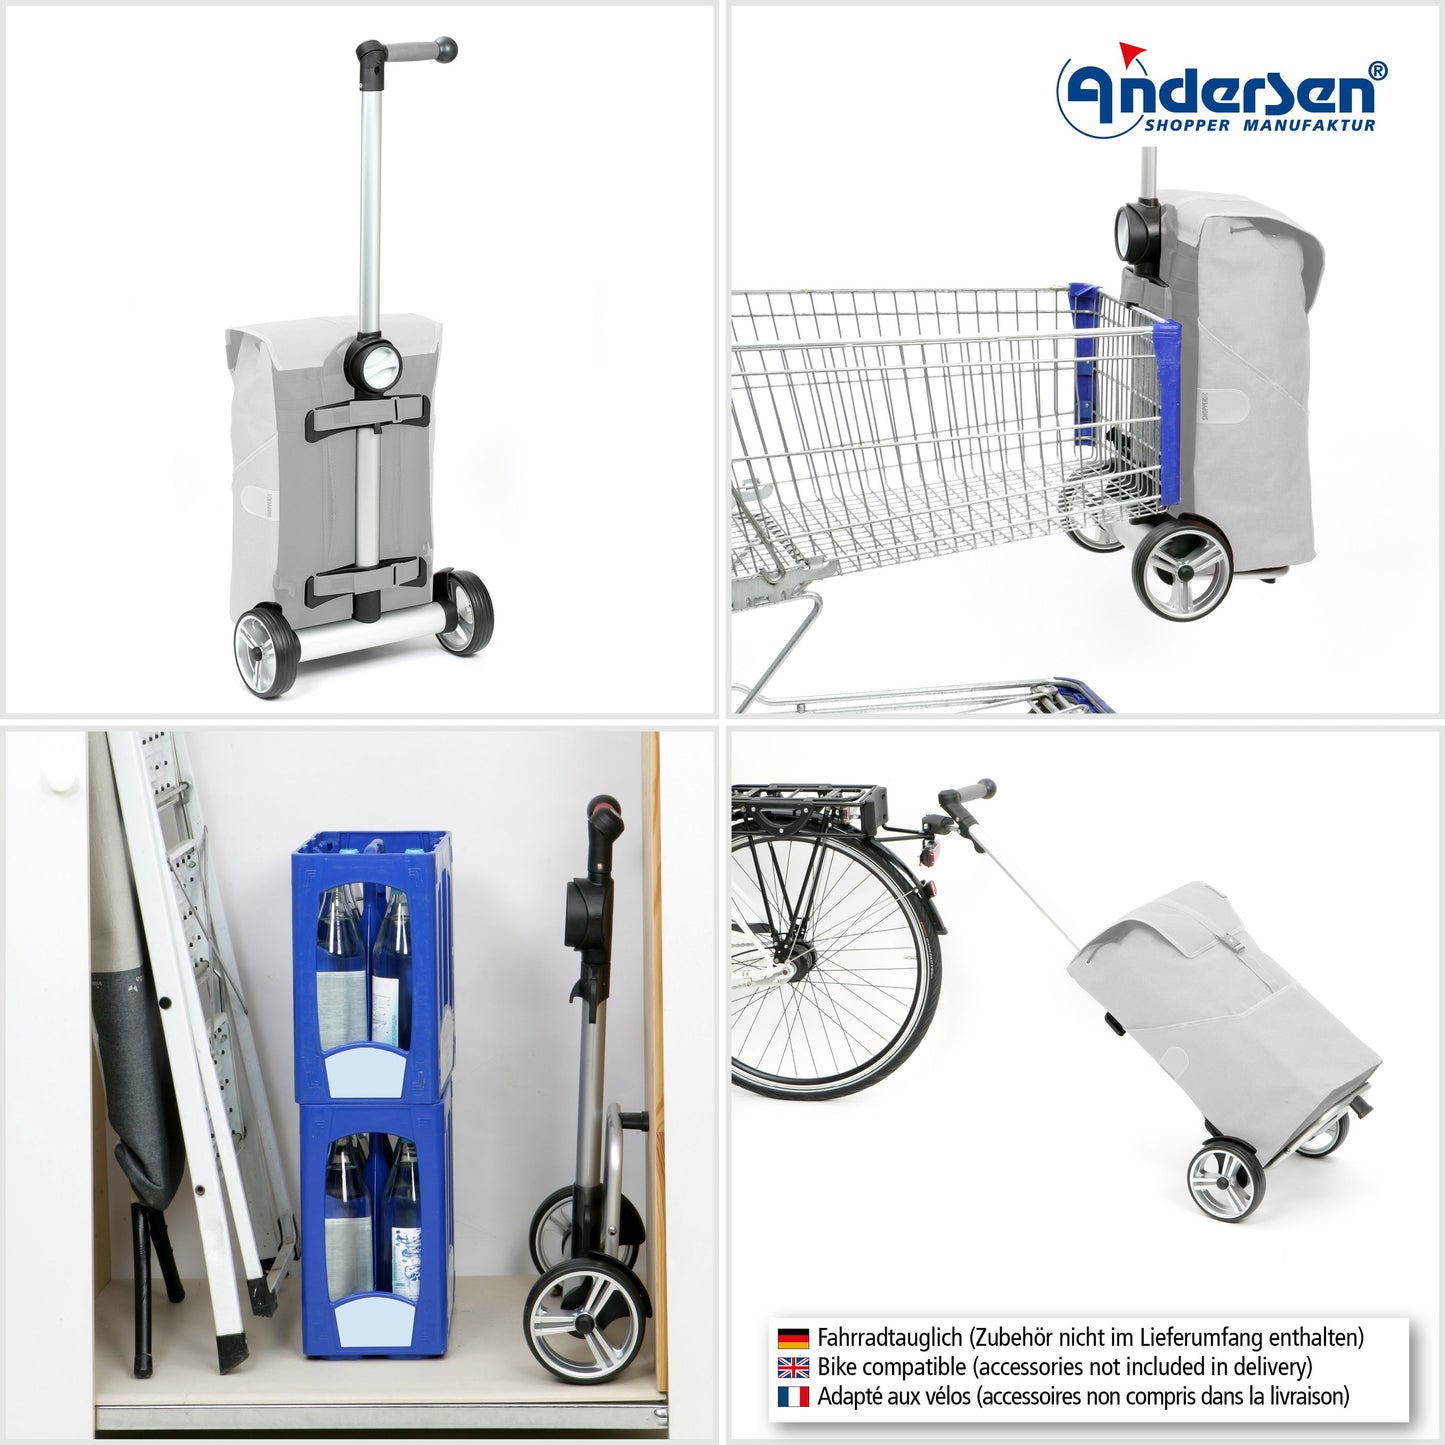 Andersen Shopper Manufaktur-Unus Shopper Oli.P 2.0 blau-www.shopping-trolley.ch-bild5